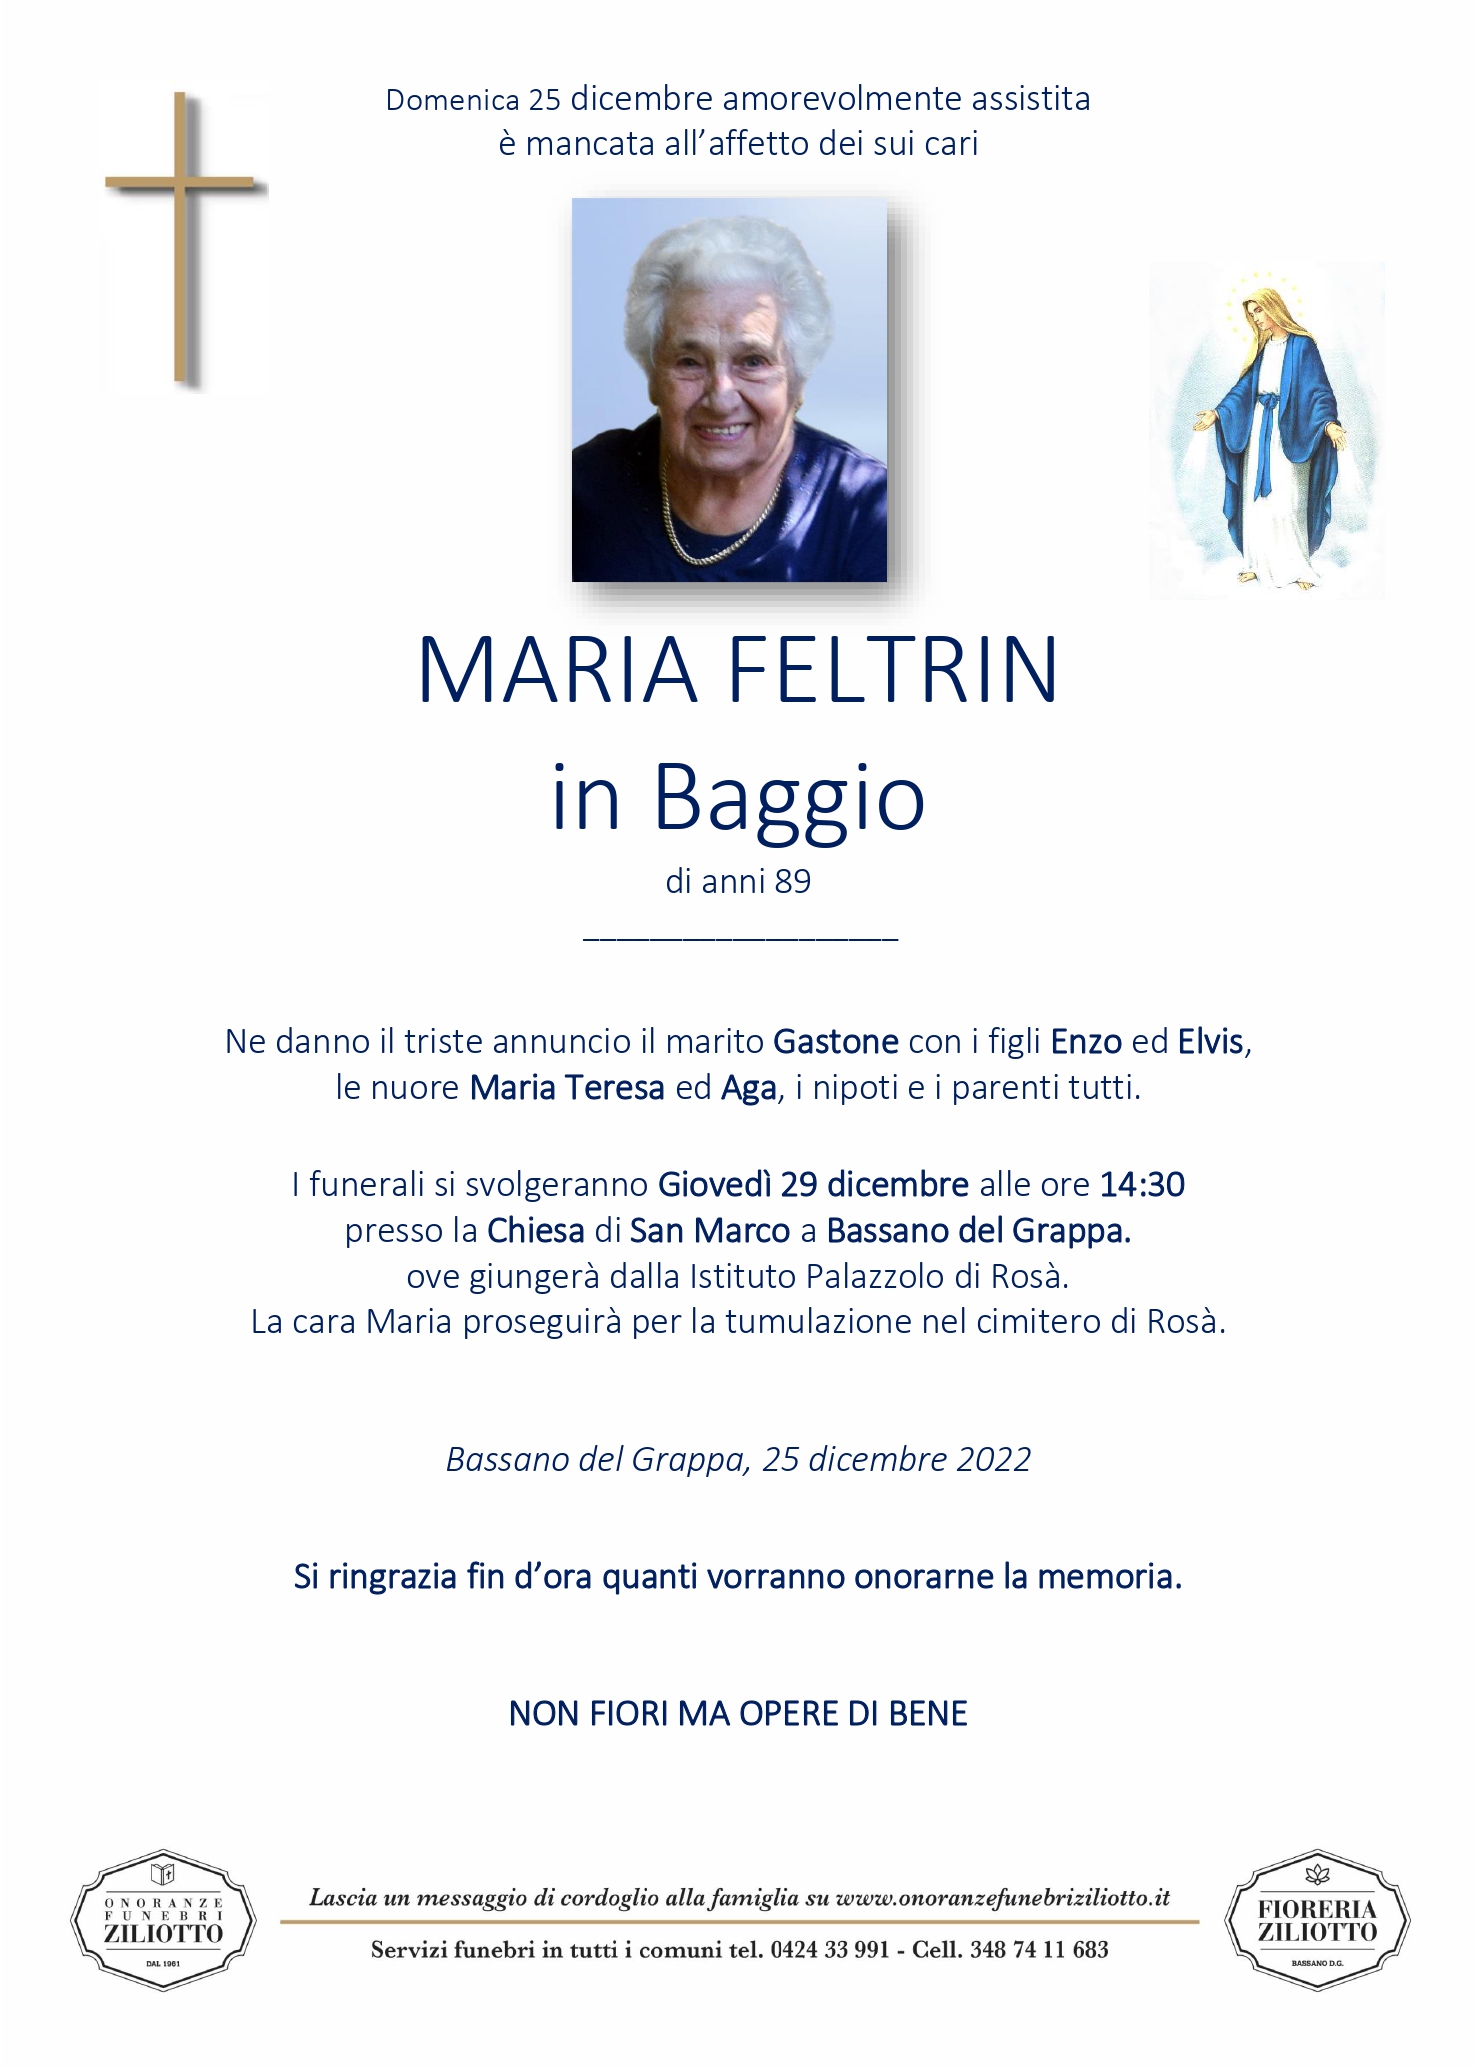 Maria Feltrin - 89 anni - Bassano del Grappa